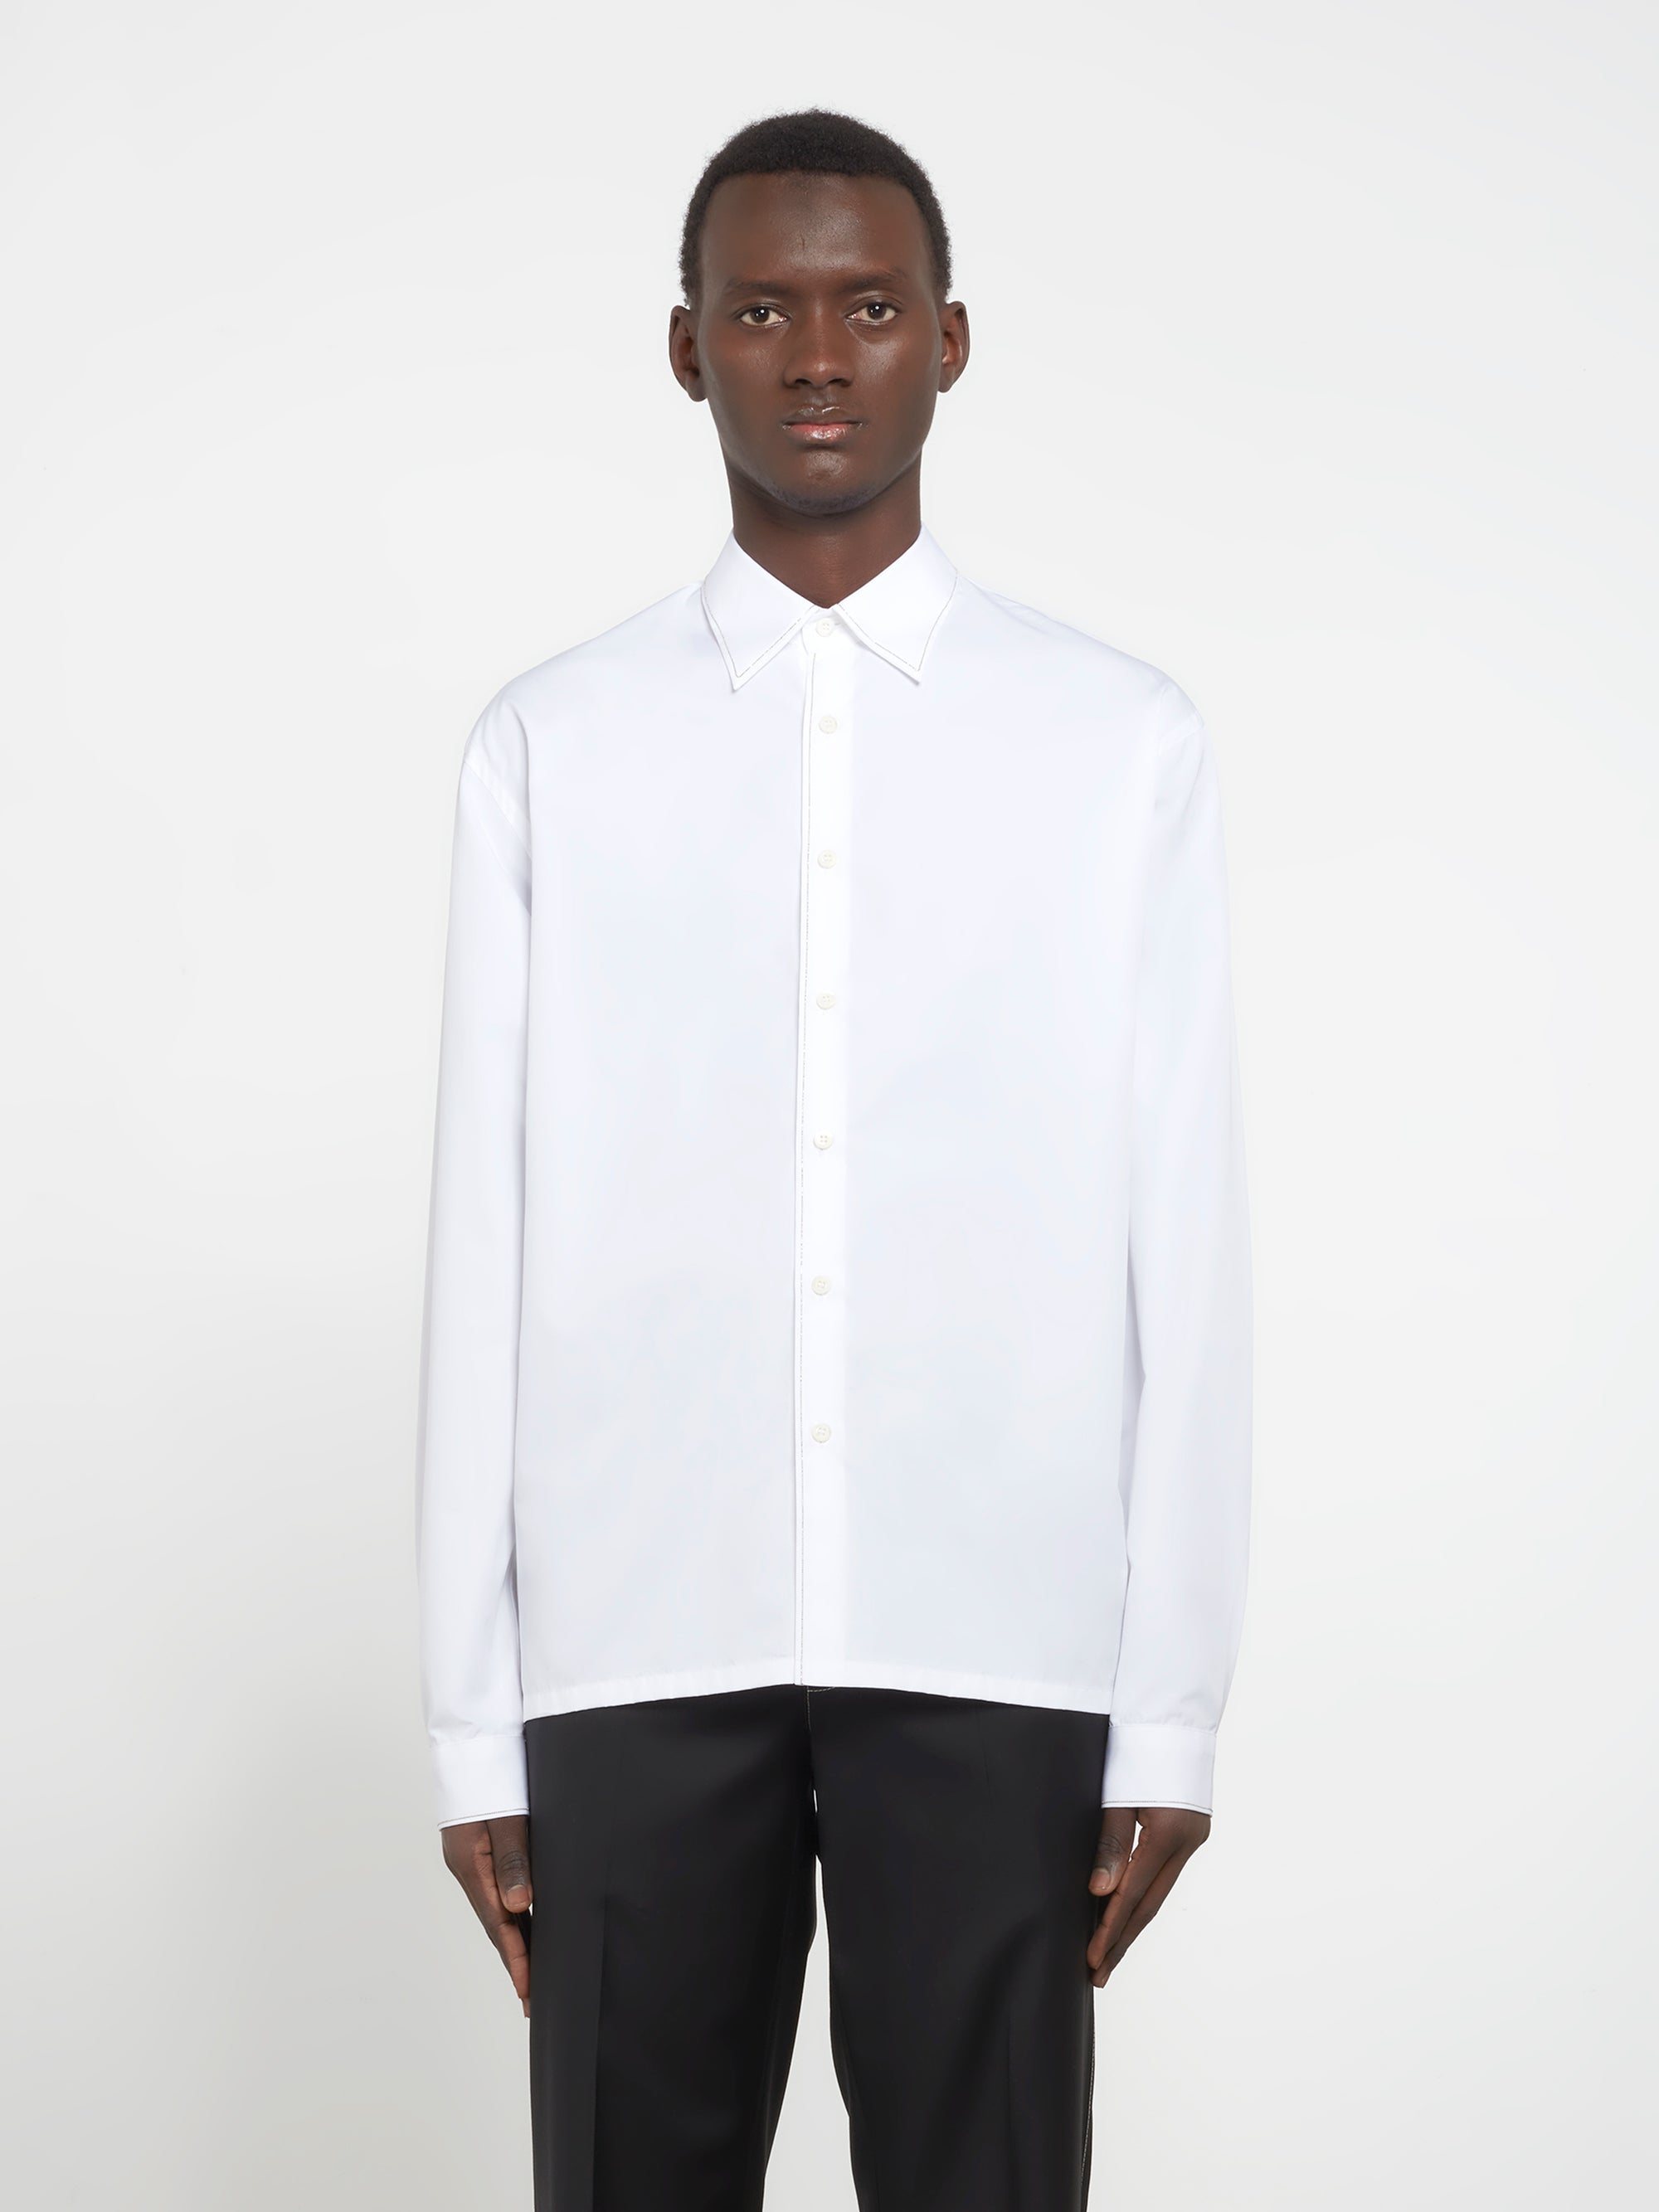 Prada - Men’s Cotton Shirt - (White) view 2